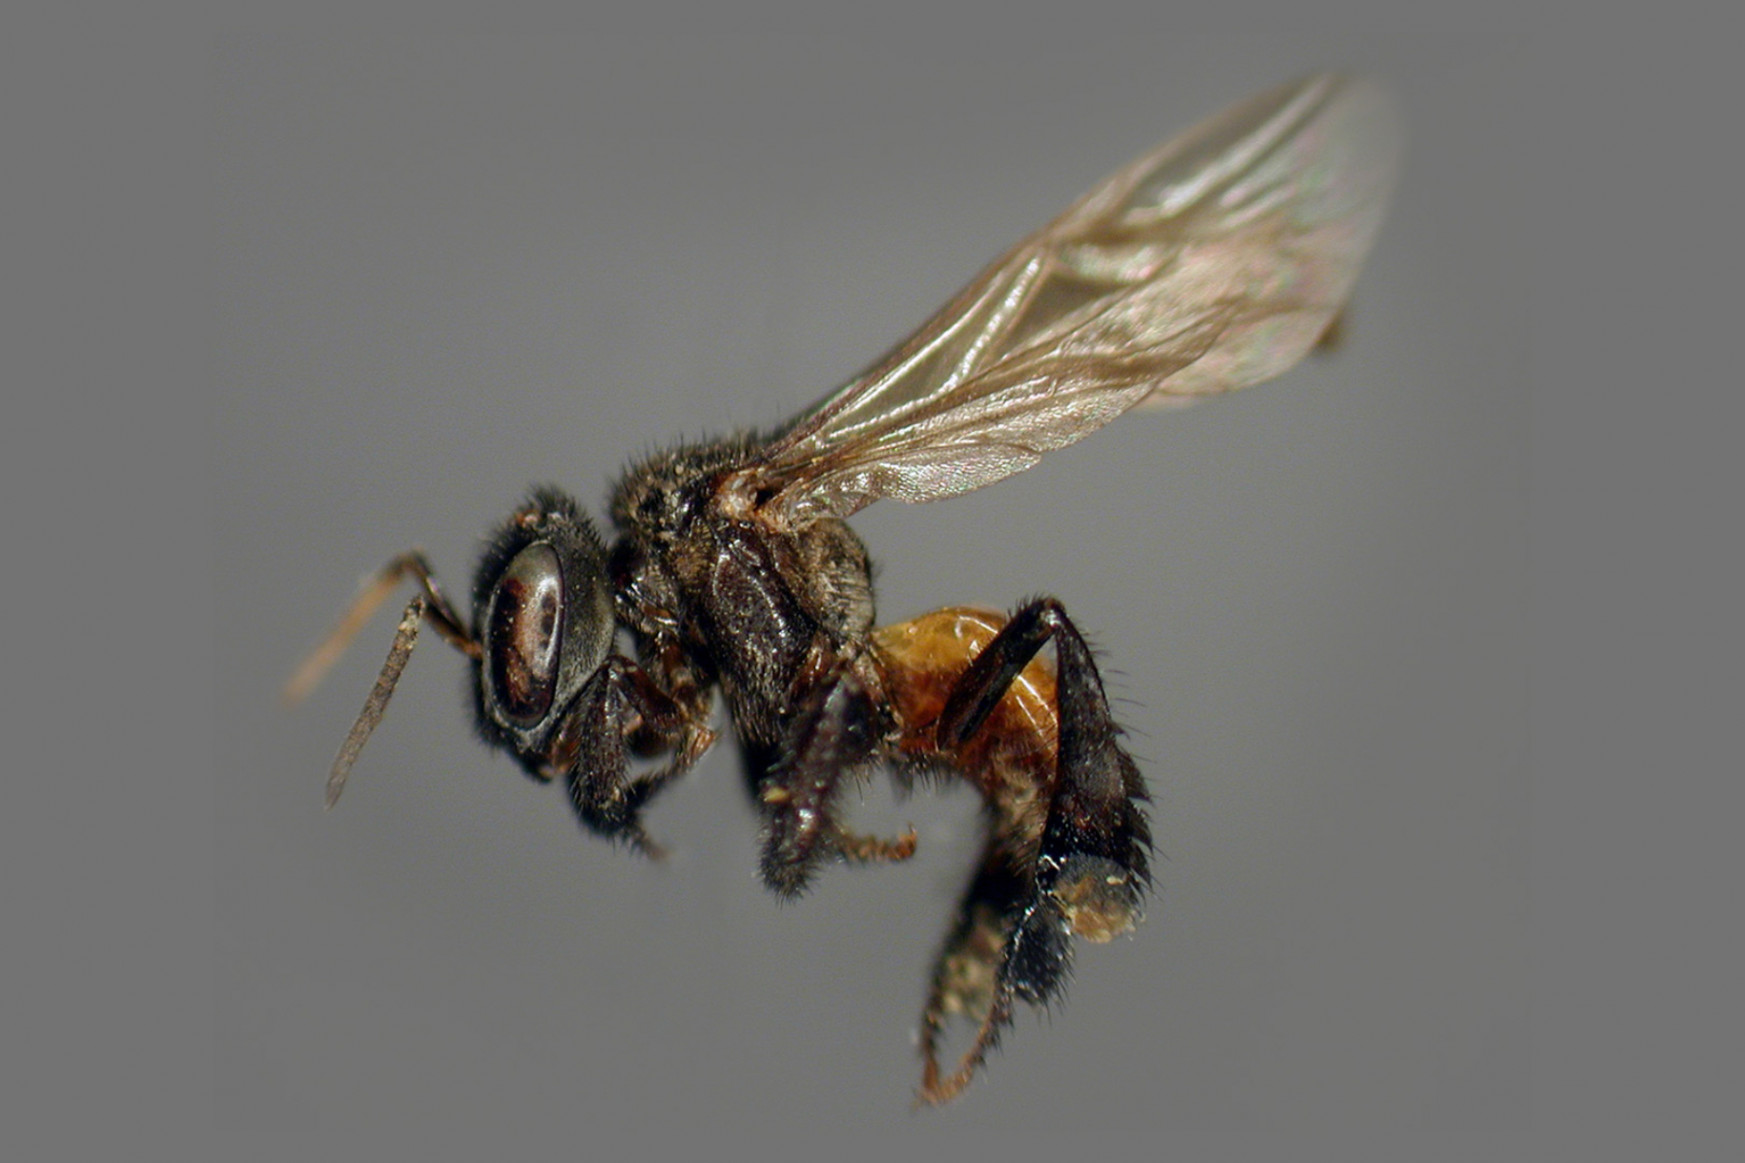 A dögevő méhek hetekig rohasztott hússal etetik a lárváikat